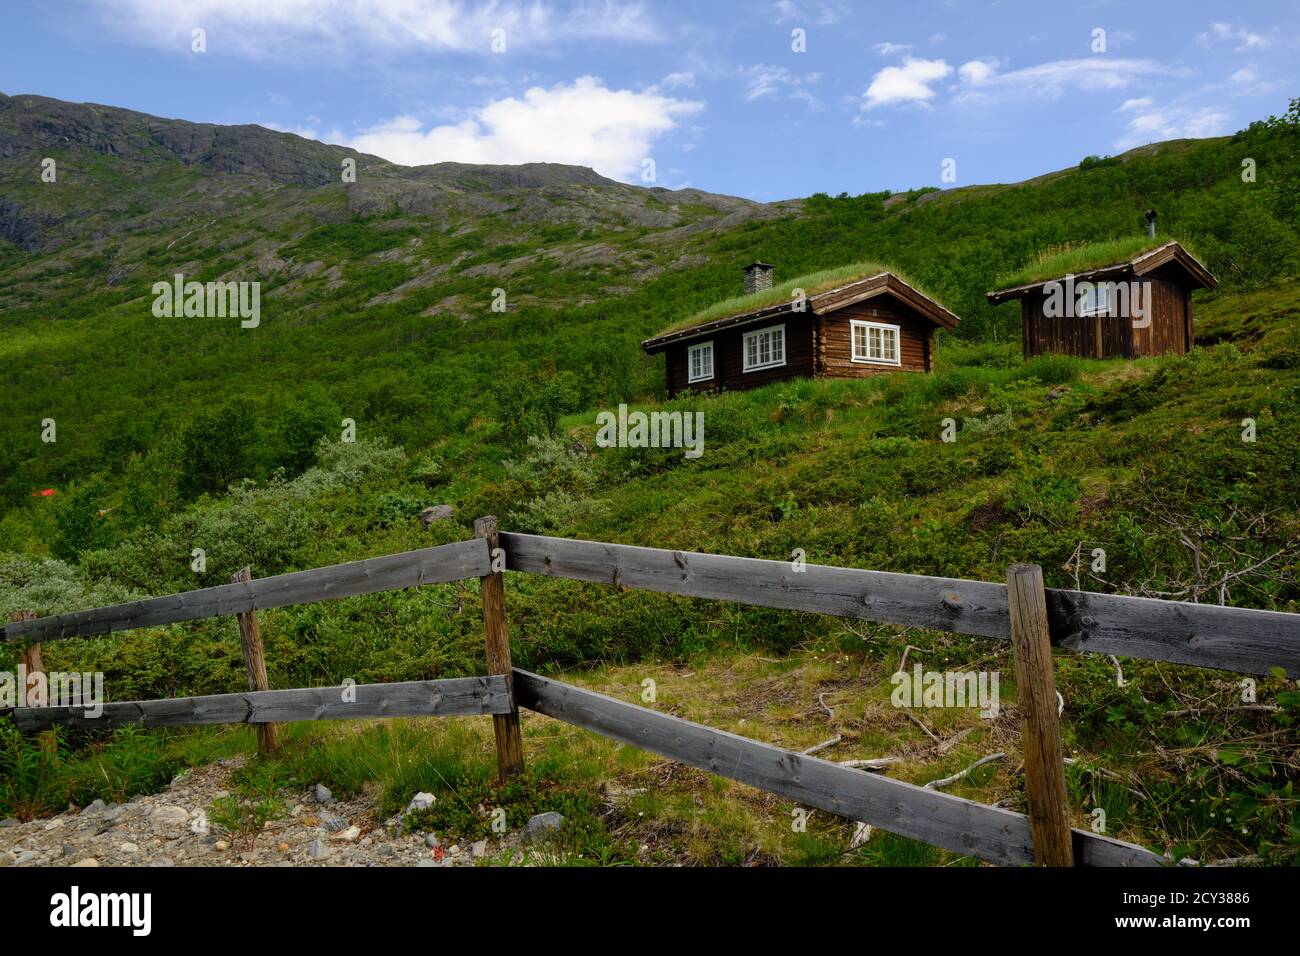 Una cabaña de madera roja con un techo de hierba tradicional Noruega Foto de stock